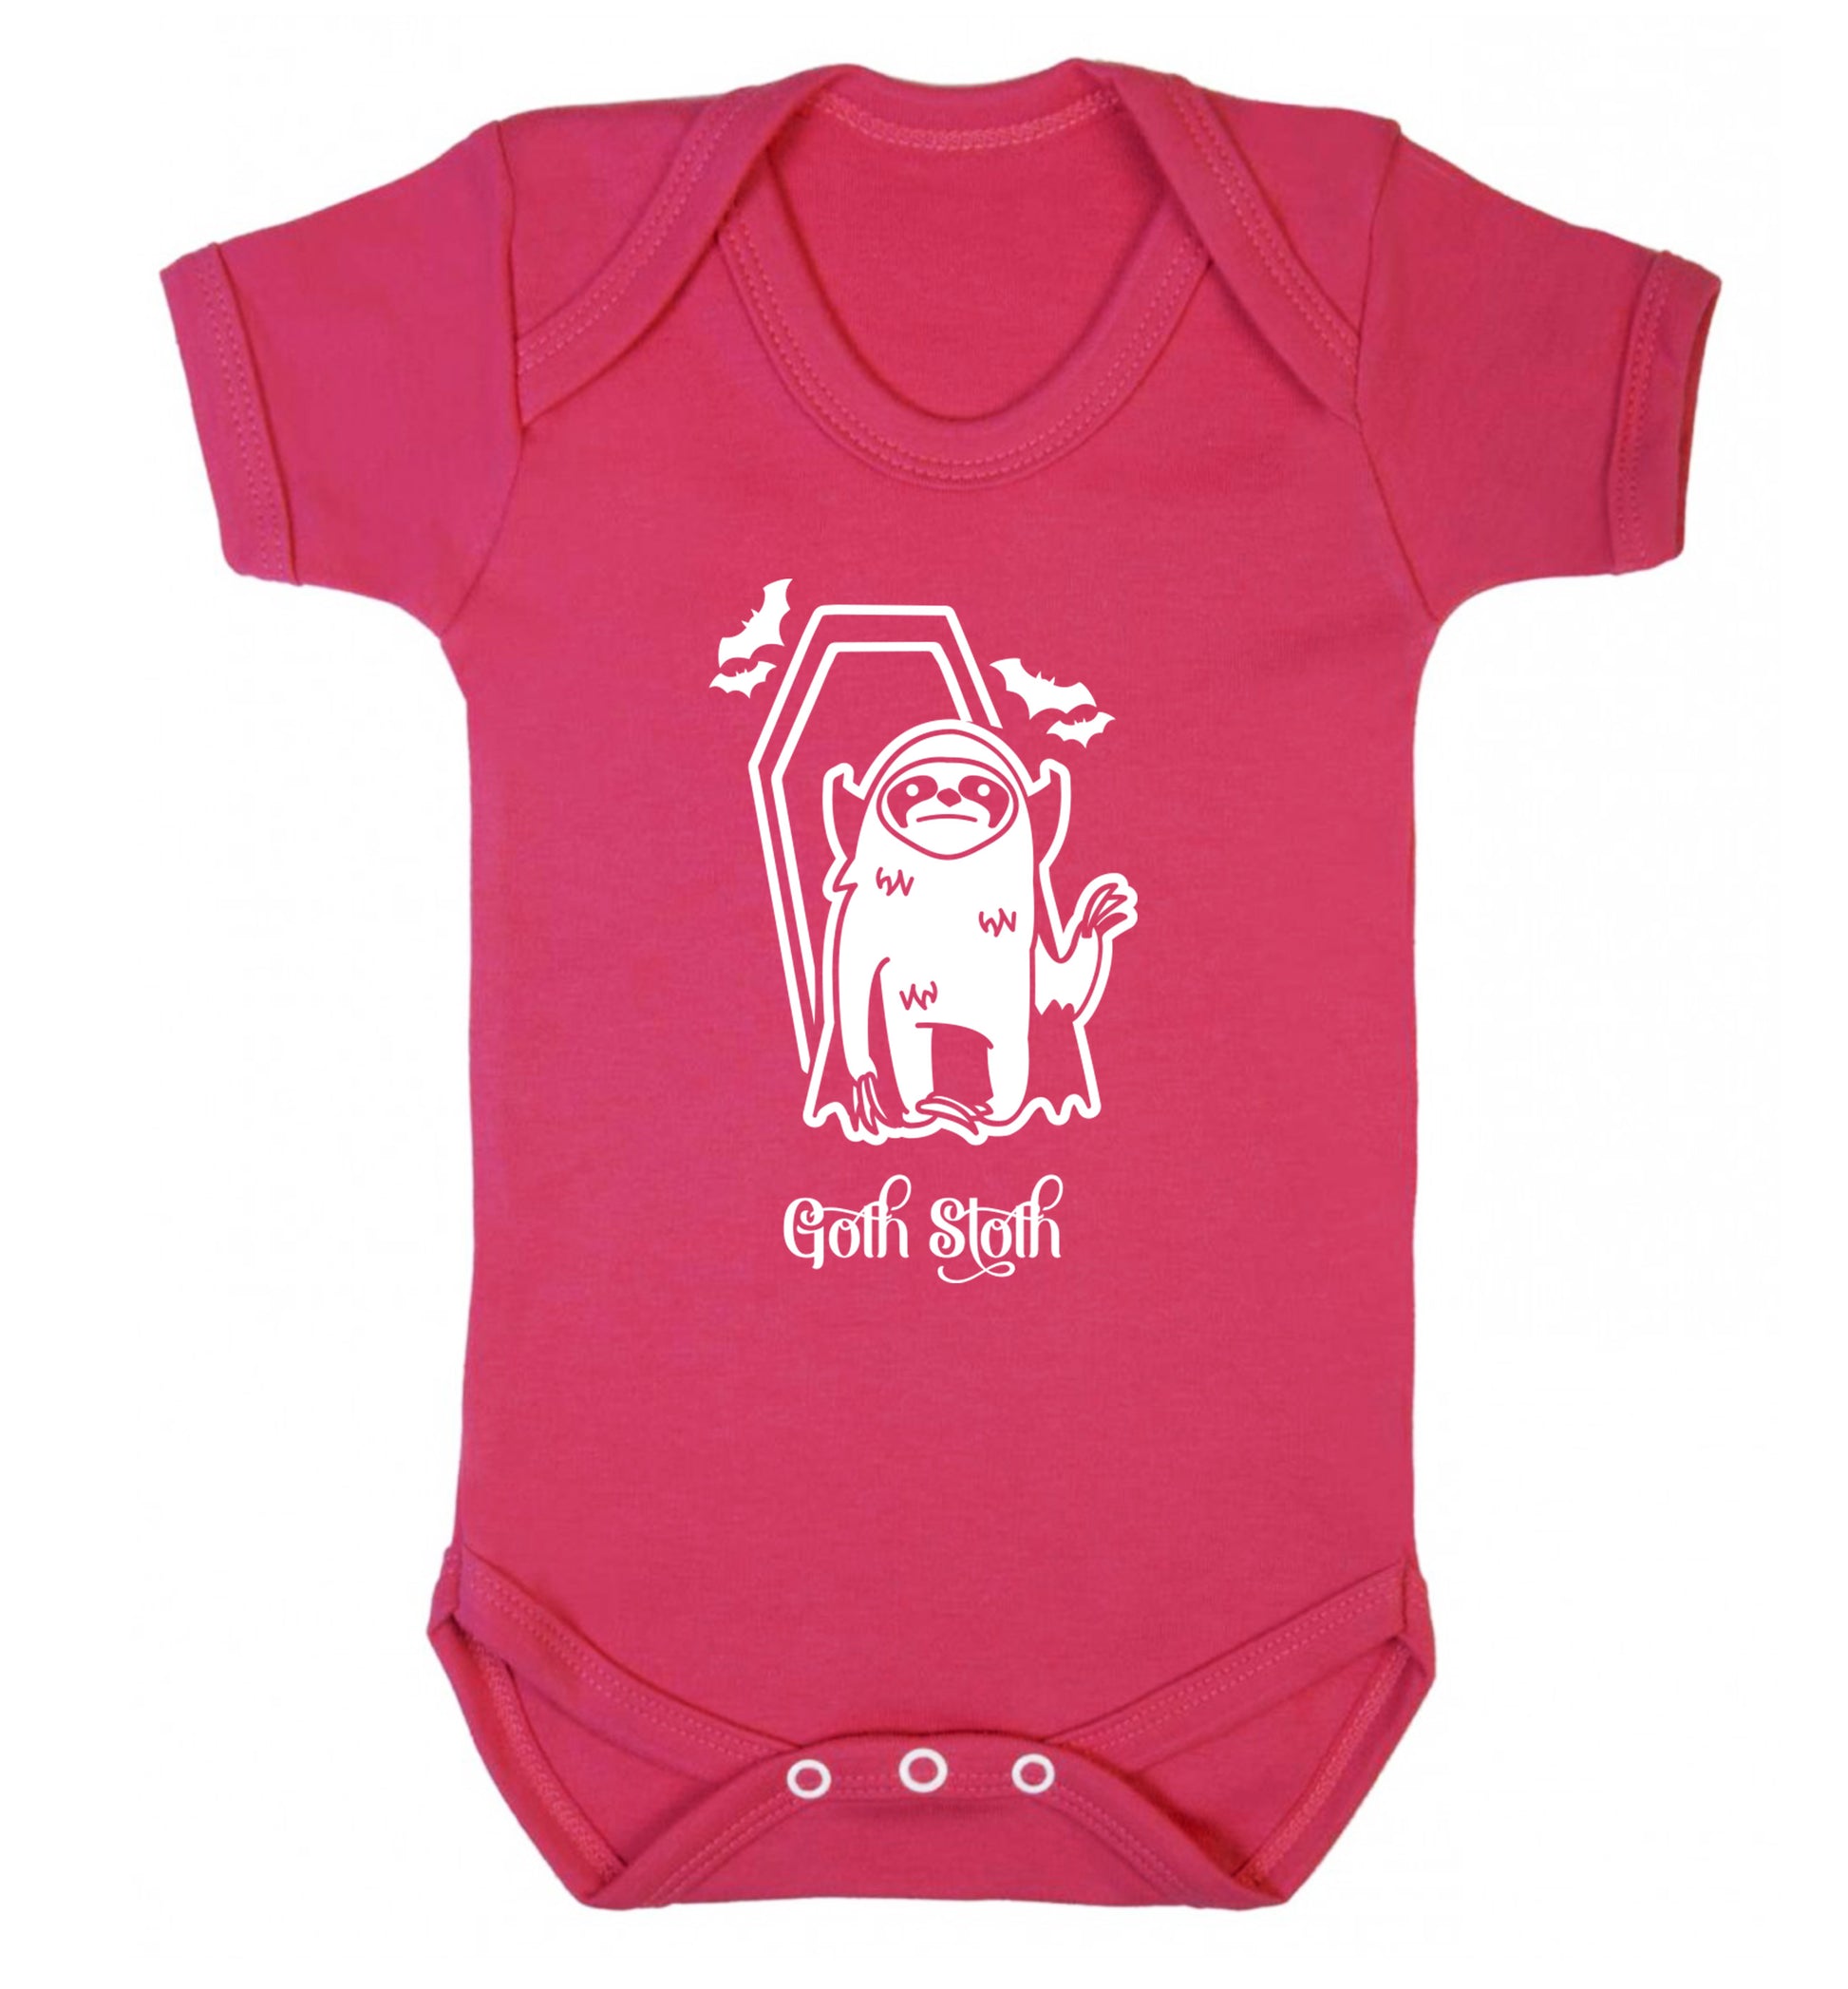 Goth Sloth Baby Vest dark pink 18-24 months